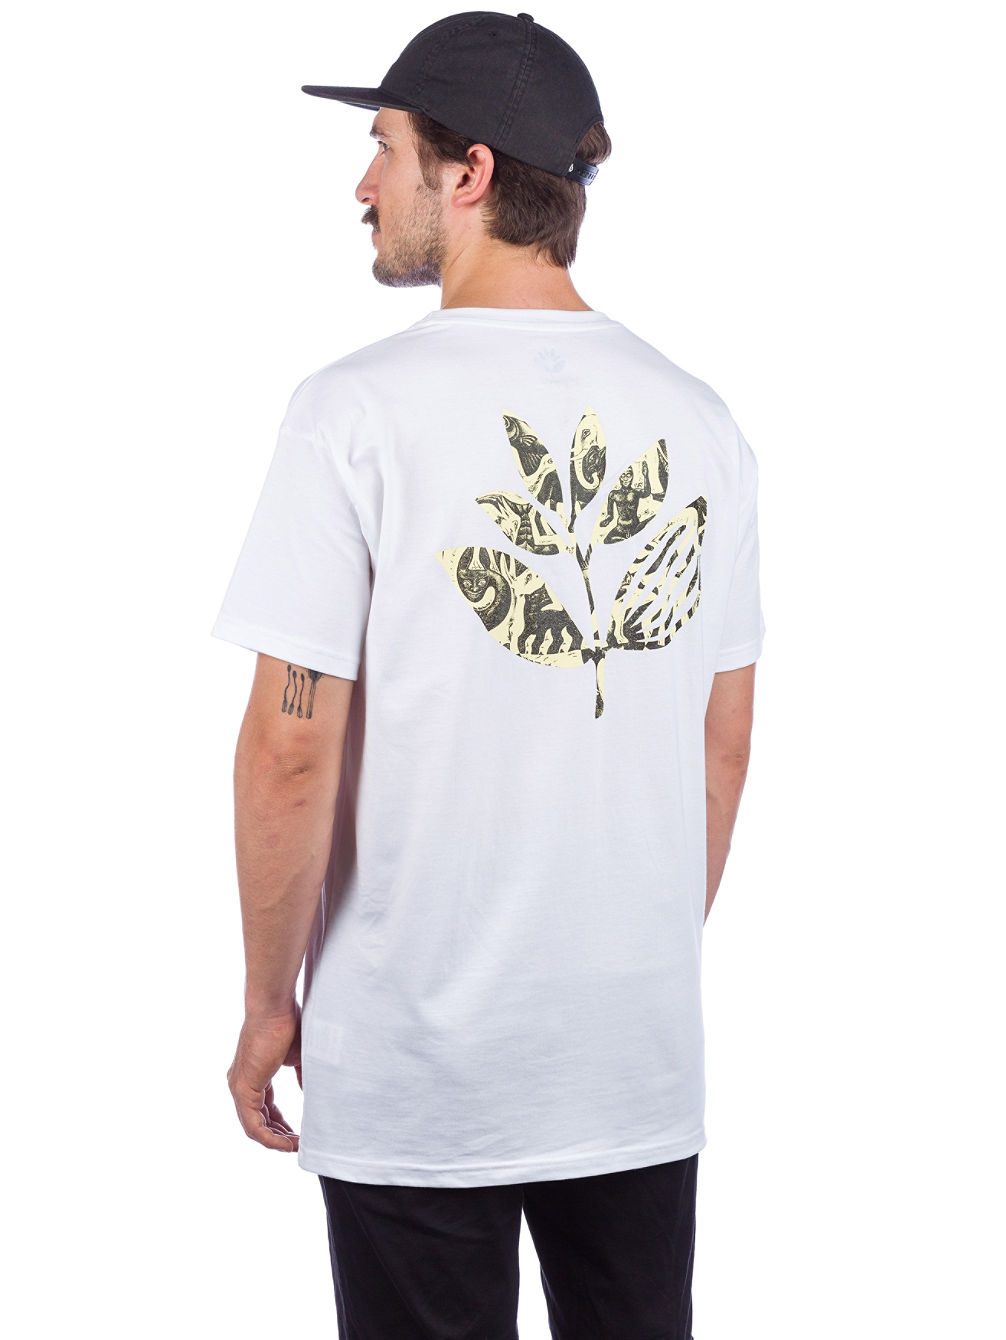 Zoo Plant T-Shirt